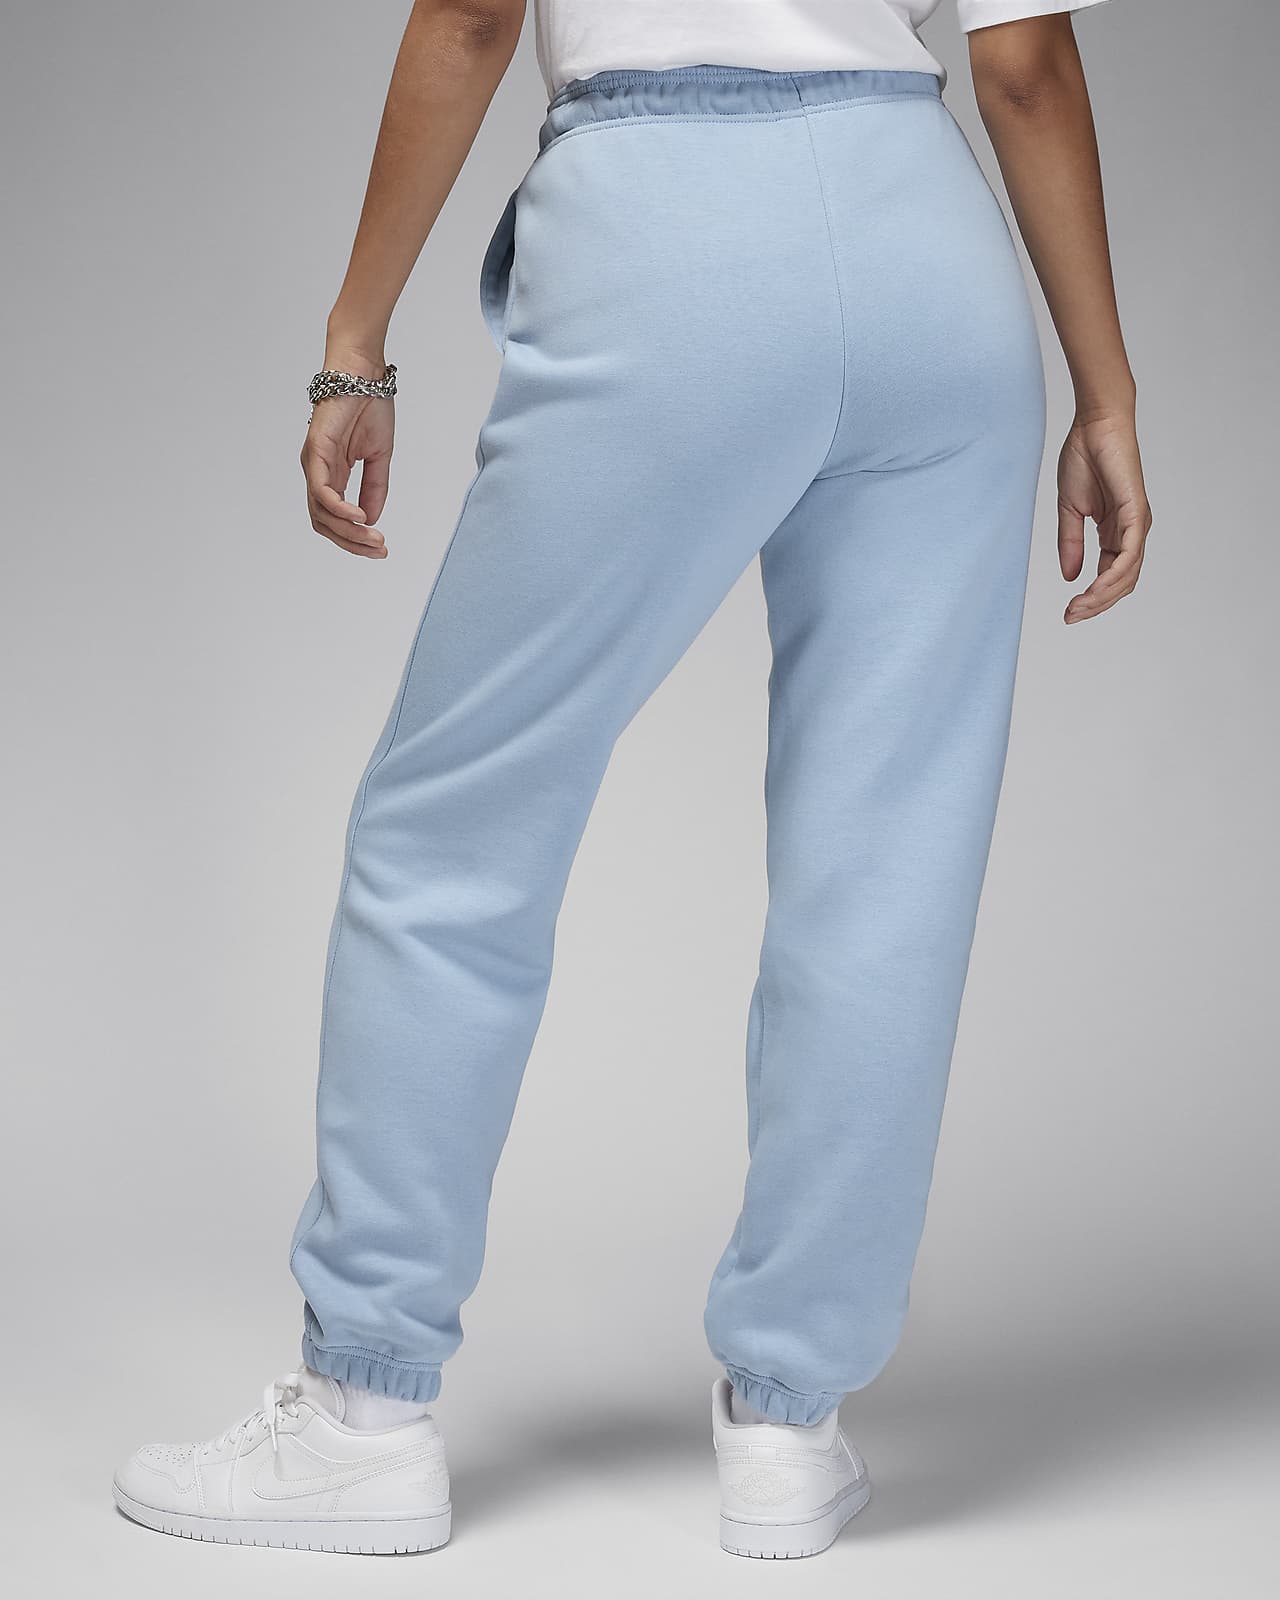 Jordan Brooklyn Fleece Women's Pants.